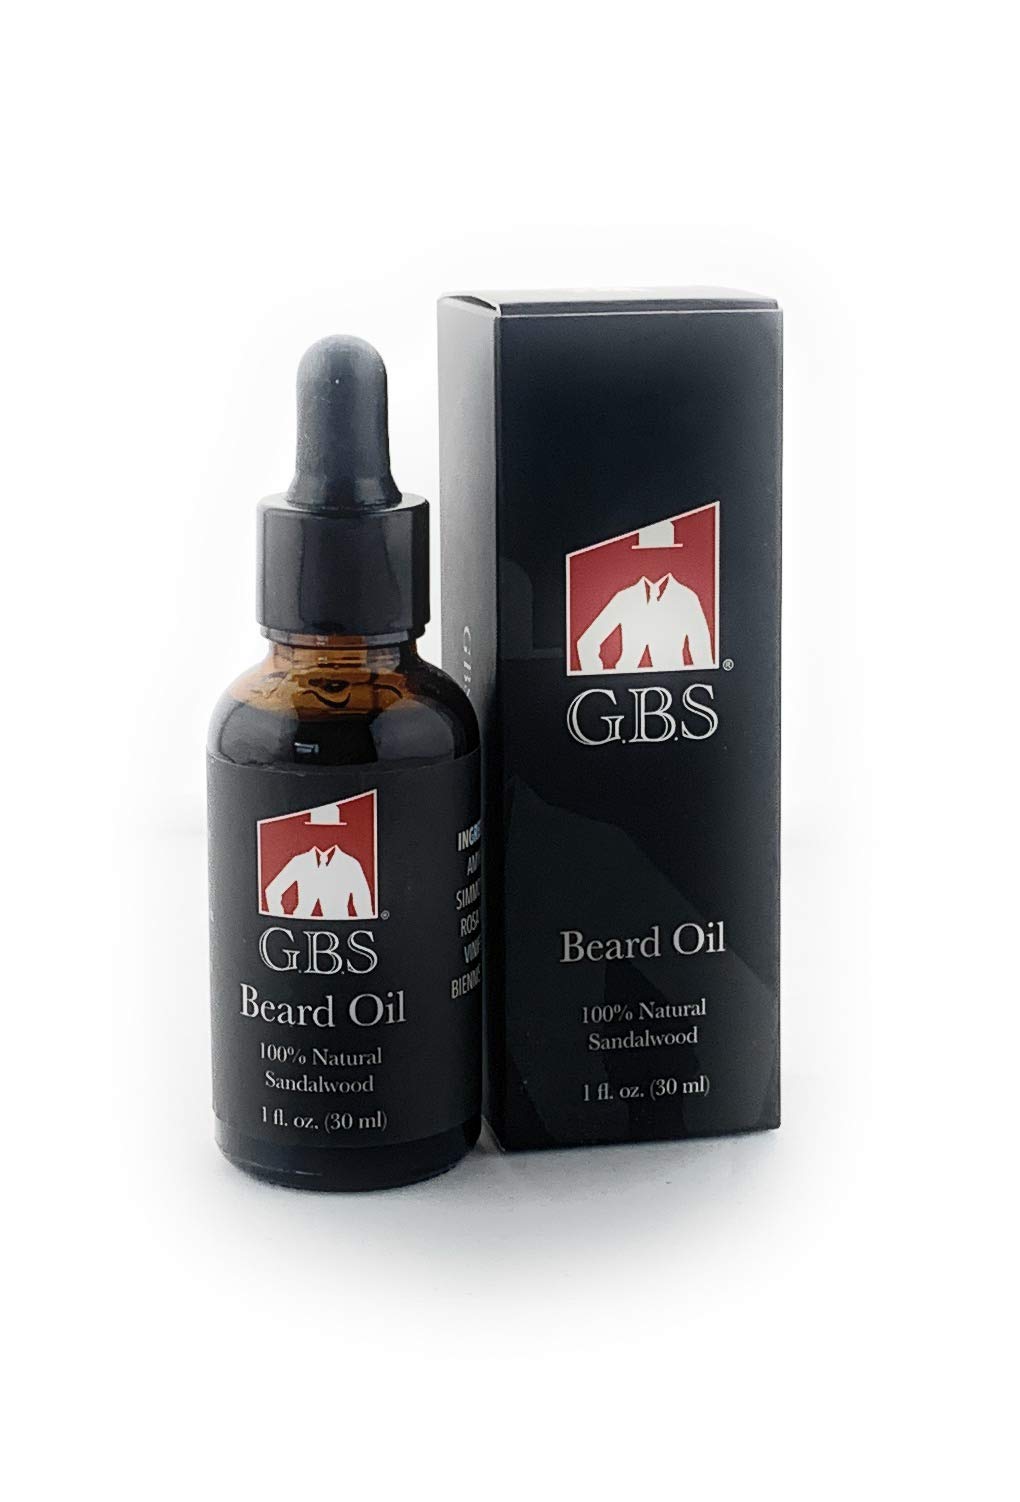 G.B.S Sandalwood Beard Oil - Glass Bottle and Dropper, 1fl oz